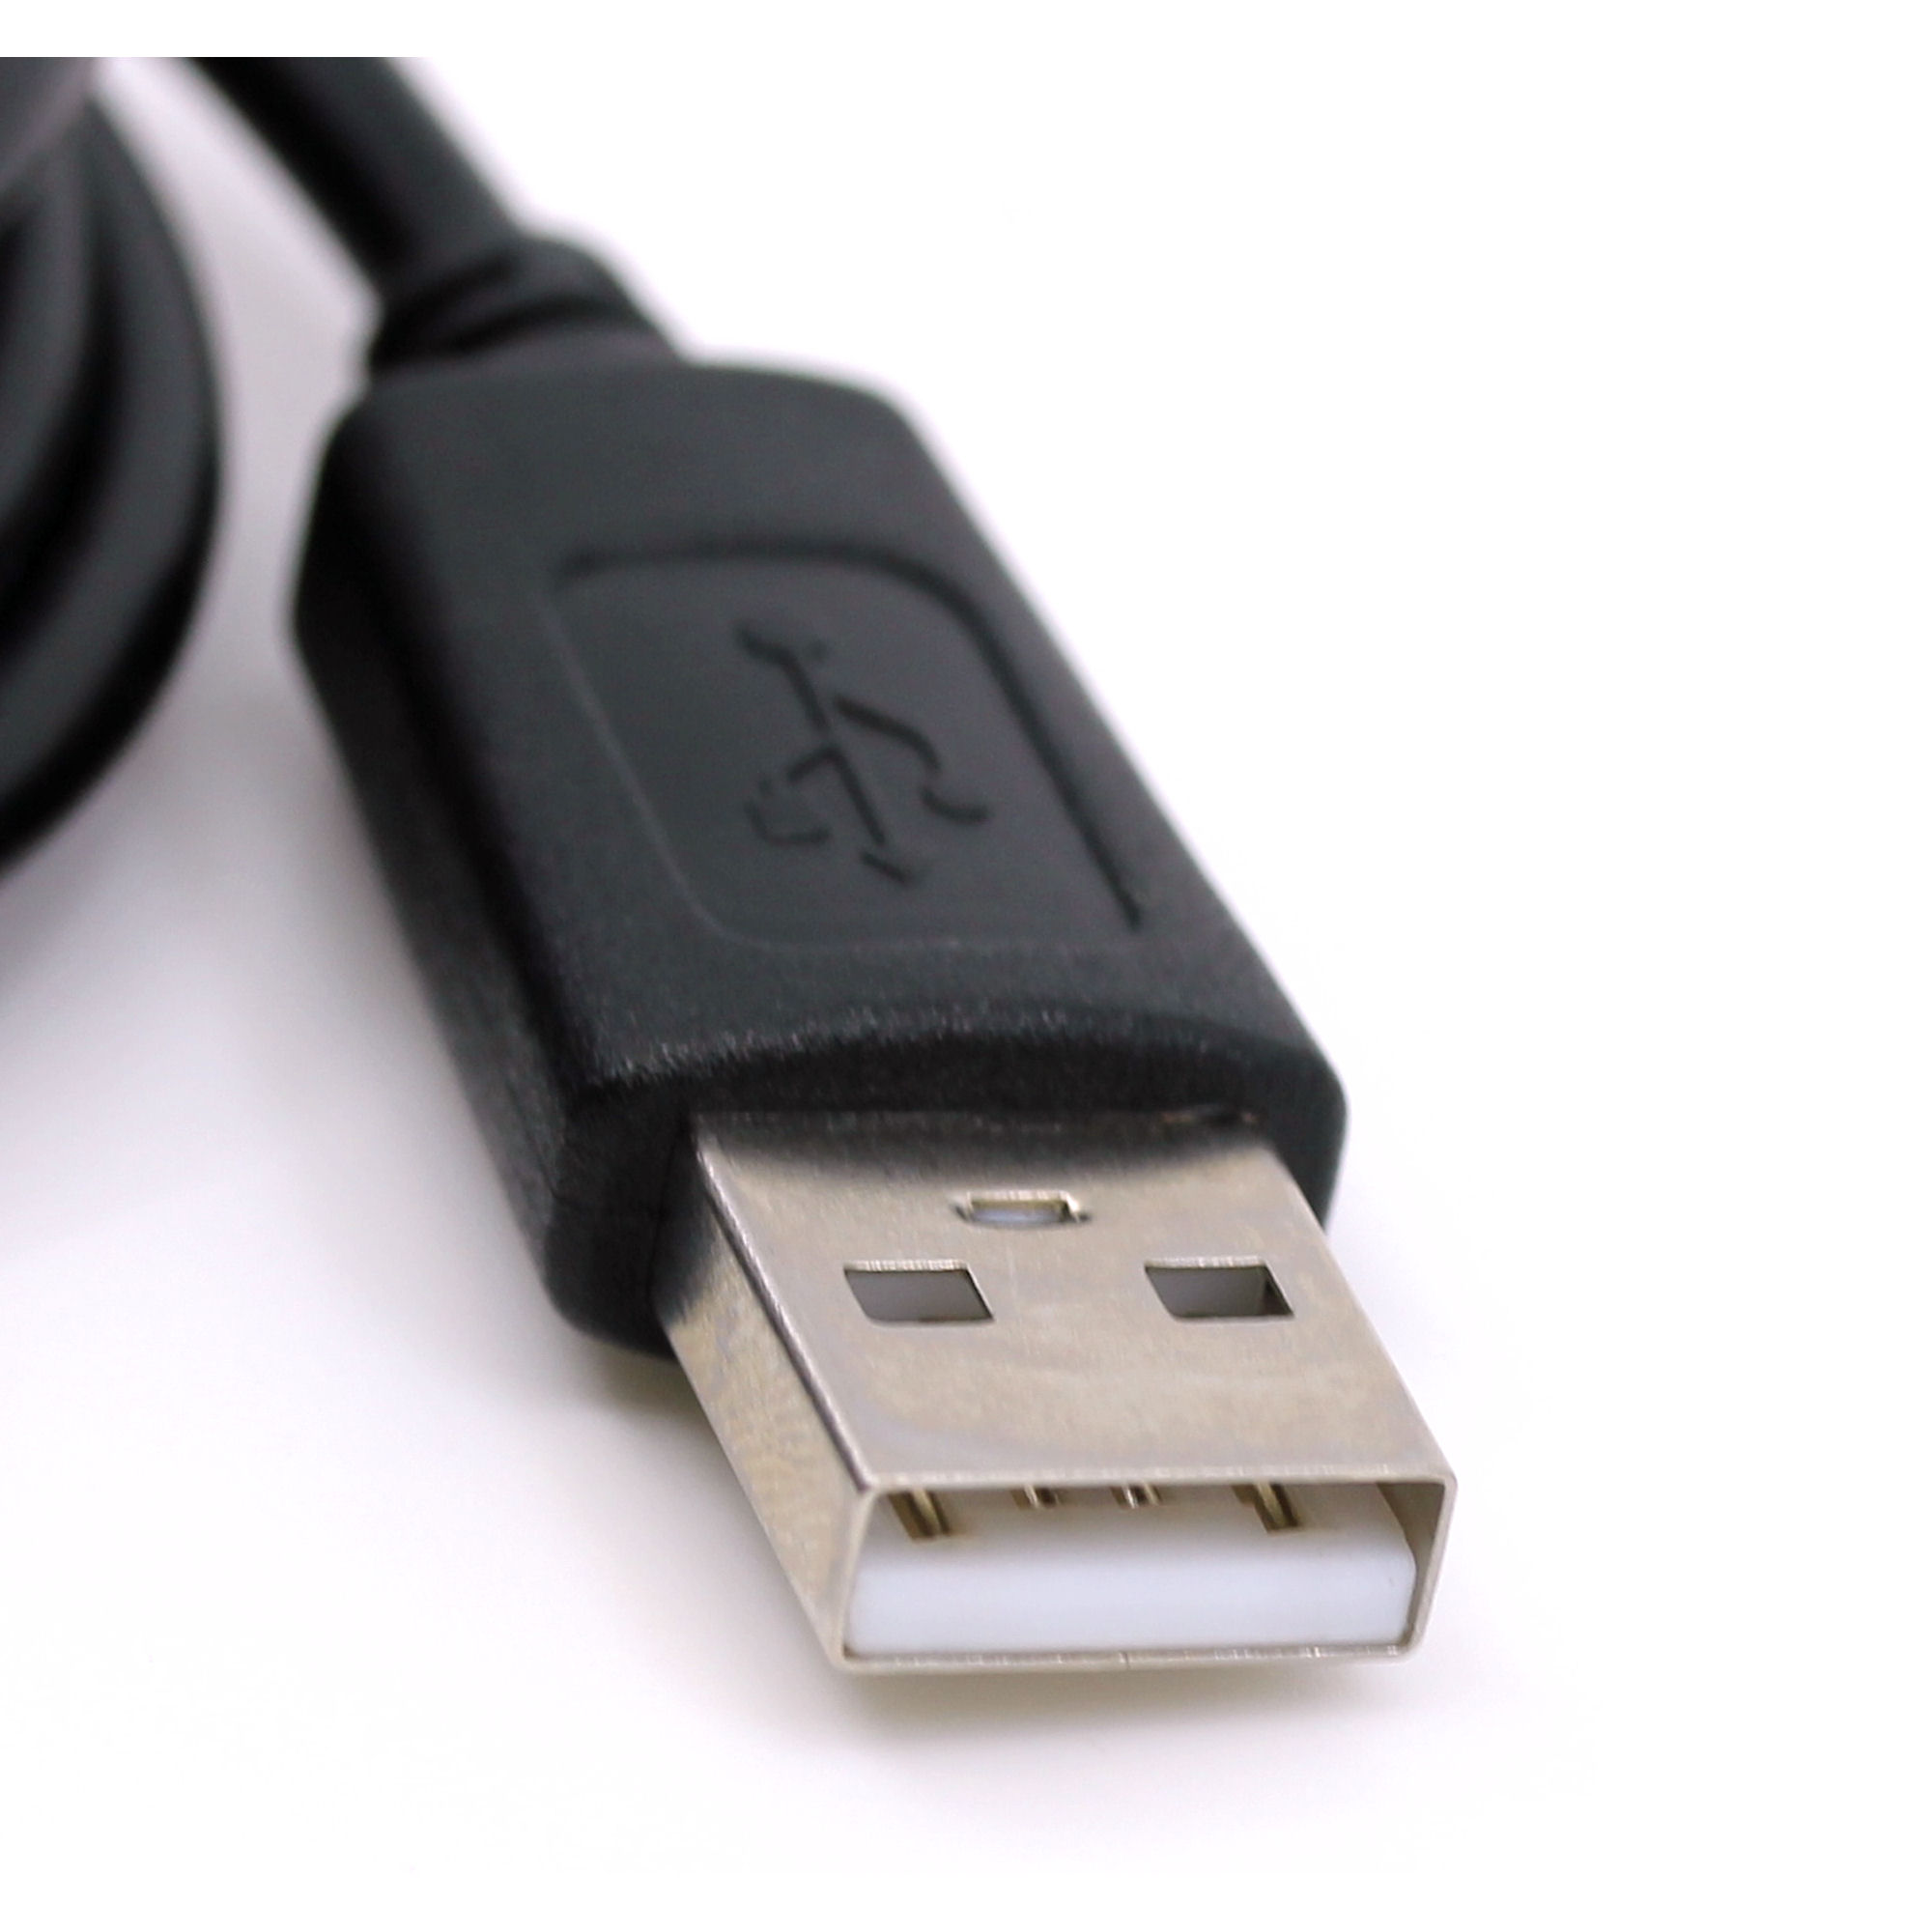 USB Datenkabel für JVC GR-DVM75, GR-DVM76, GR-DVM76U, GR-DVM95, GR-DVM96, GR-DVM96U, GR-DVP3